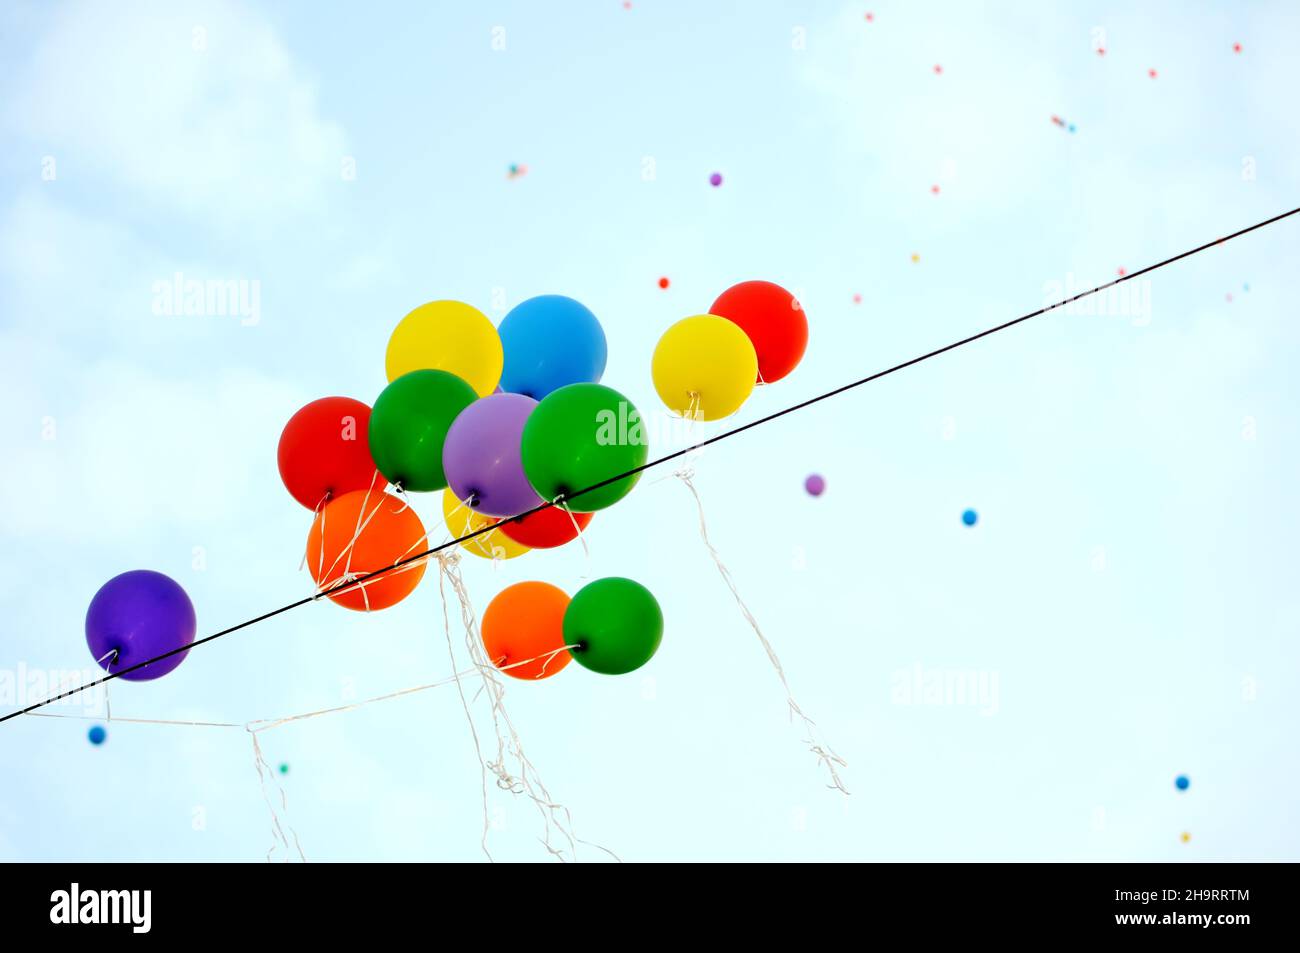 Festival est terminé, des ballons multicolores attrapent le câble électrique Banque D'Images